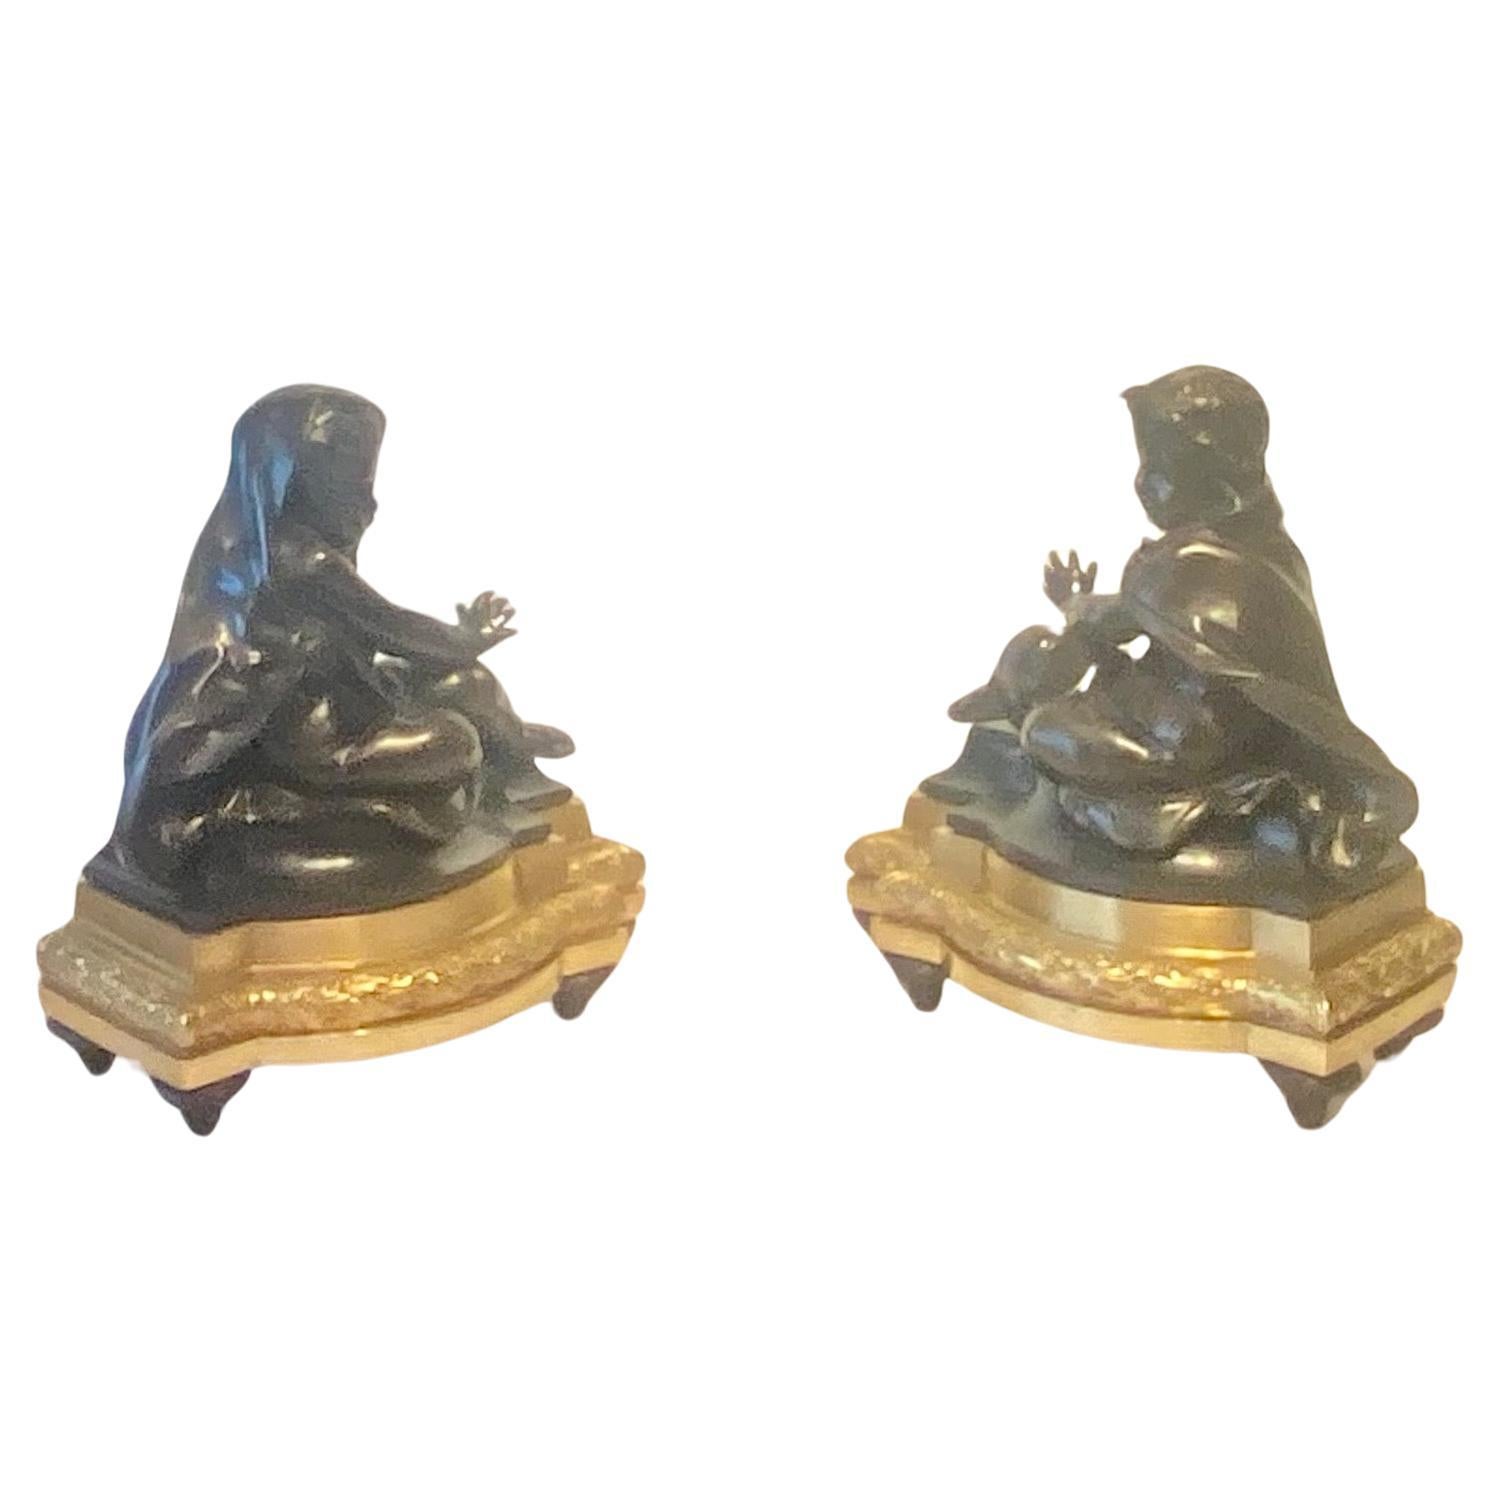 Ein feines und beeindruckendes Paar vergoldeter und patinierter Bronze-Chenets im Louis XVI-Stil, die den Winter symbolisieren.
Diese sehen in natura viel besser aus, da sie größer als normal und sehr kräftig sind. Jedes Chenet ist als sitzender